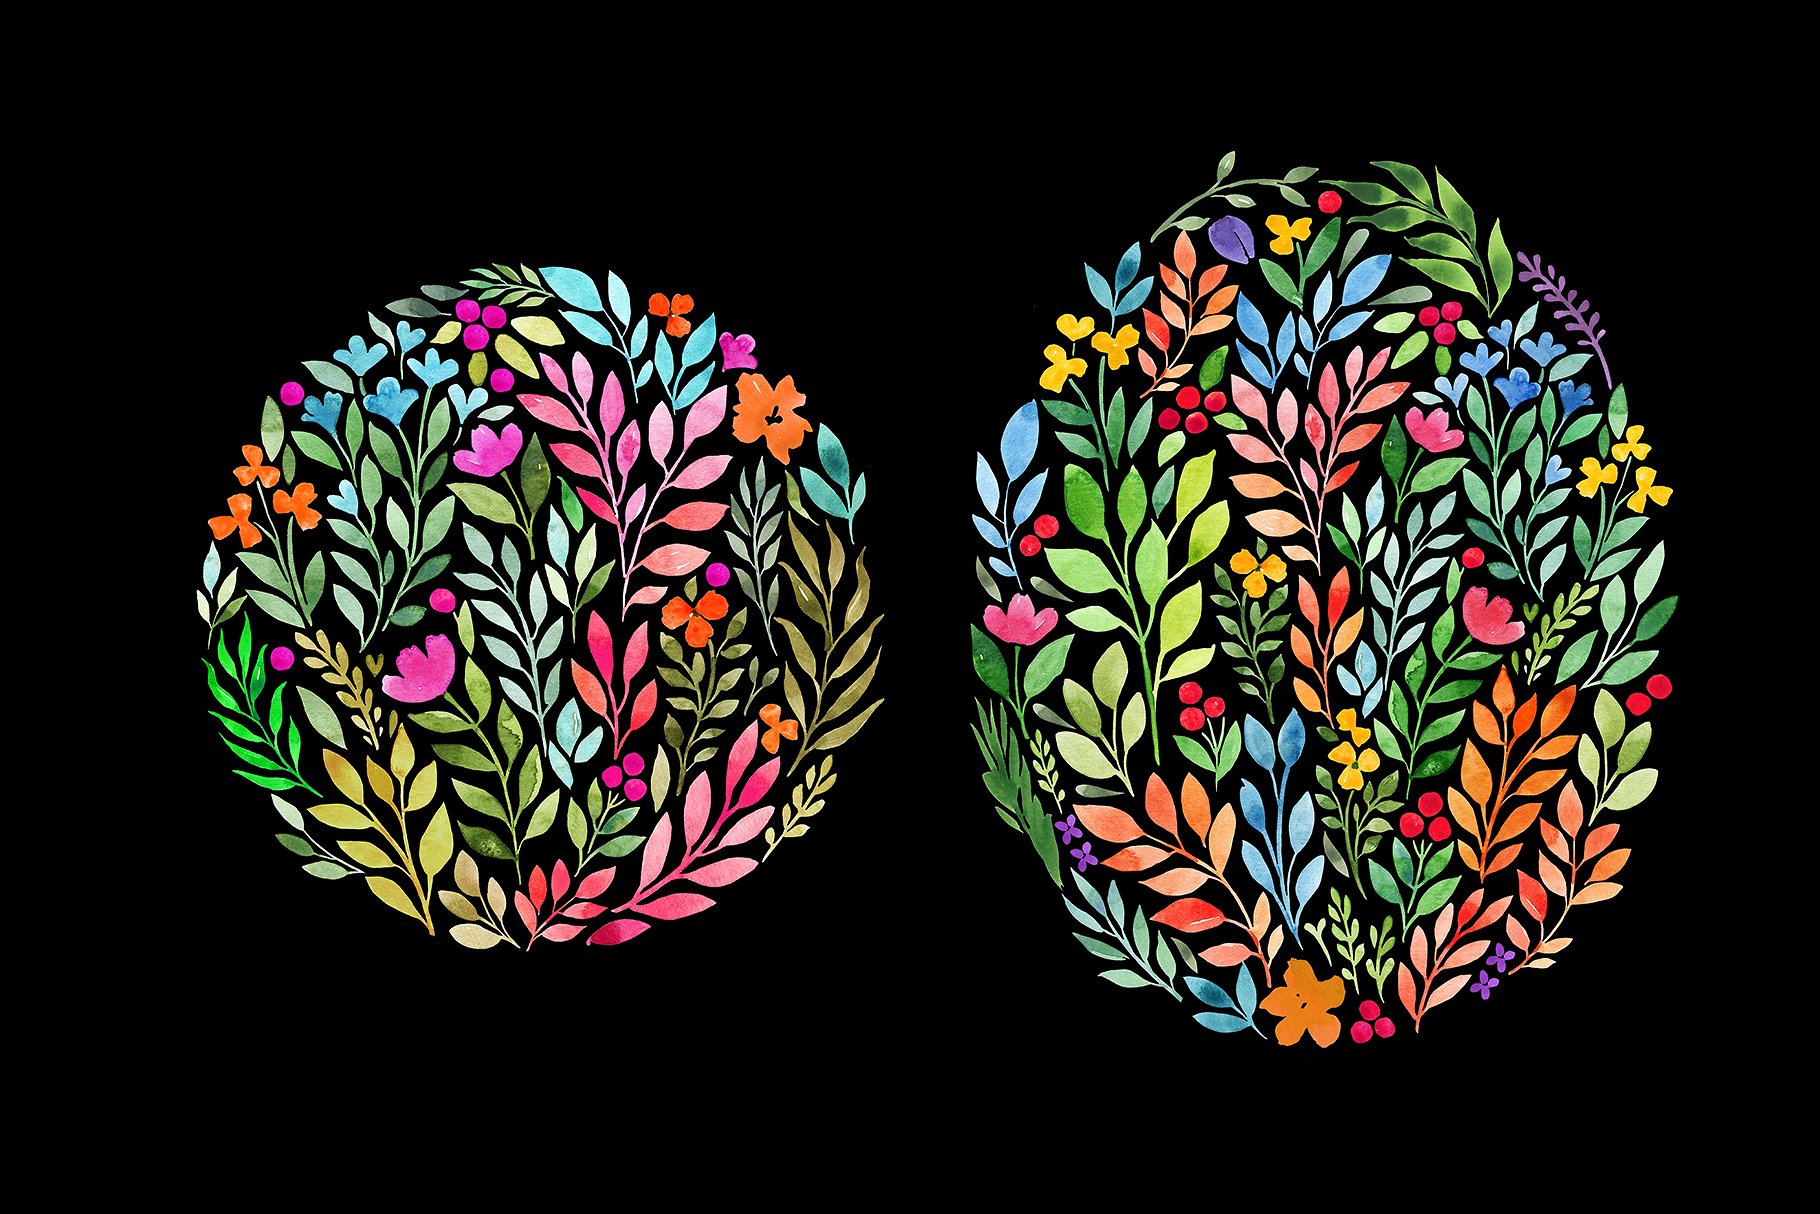 水彩花卉图案椭圆形心形水滴形状图案素材 Watercolor